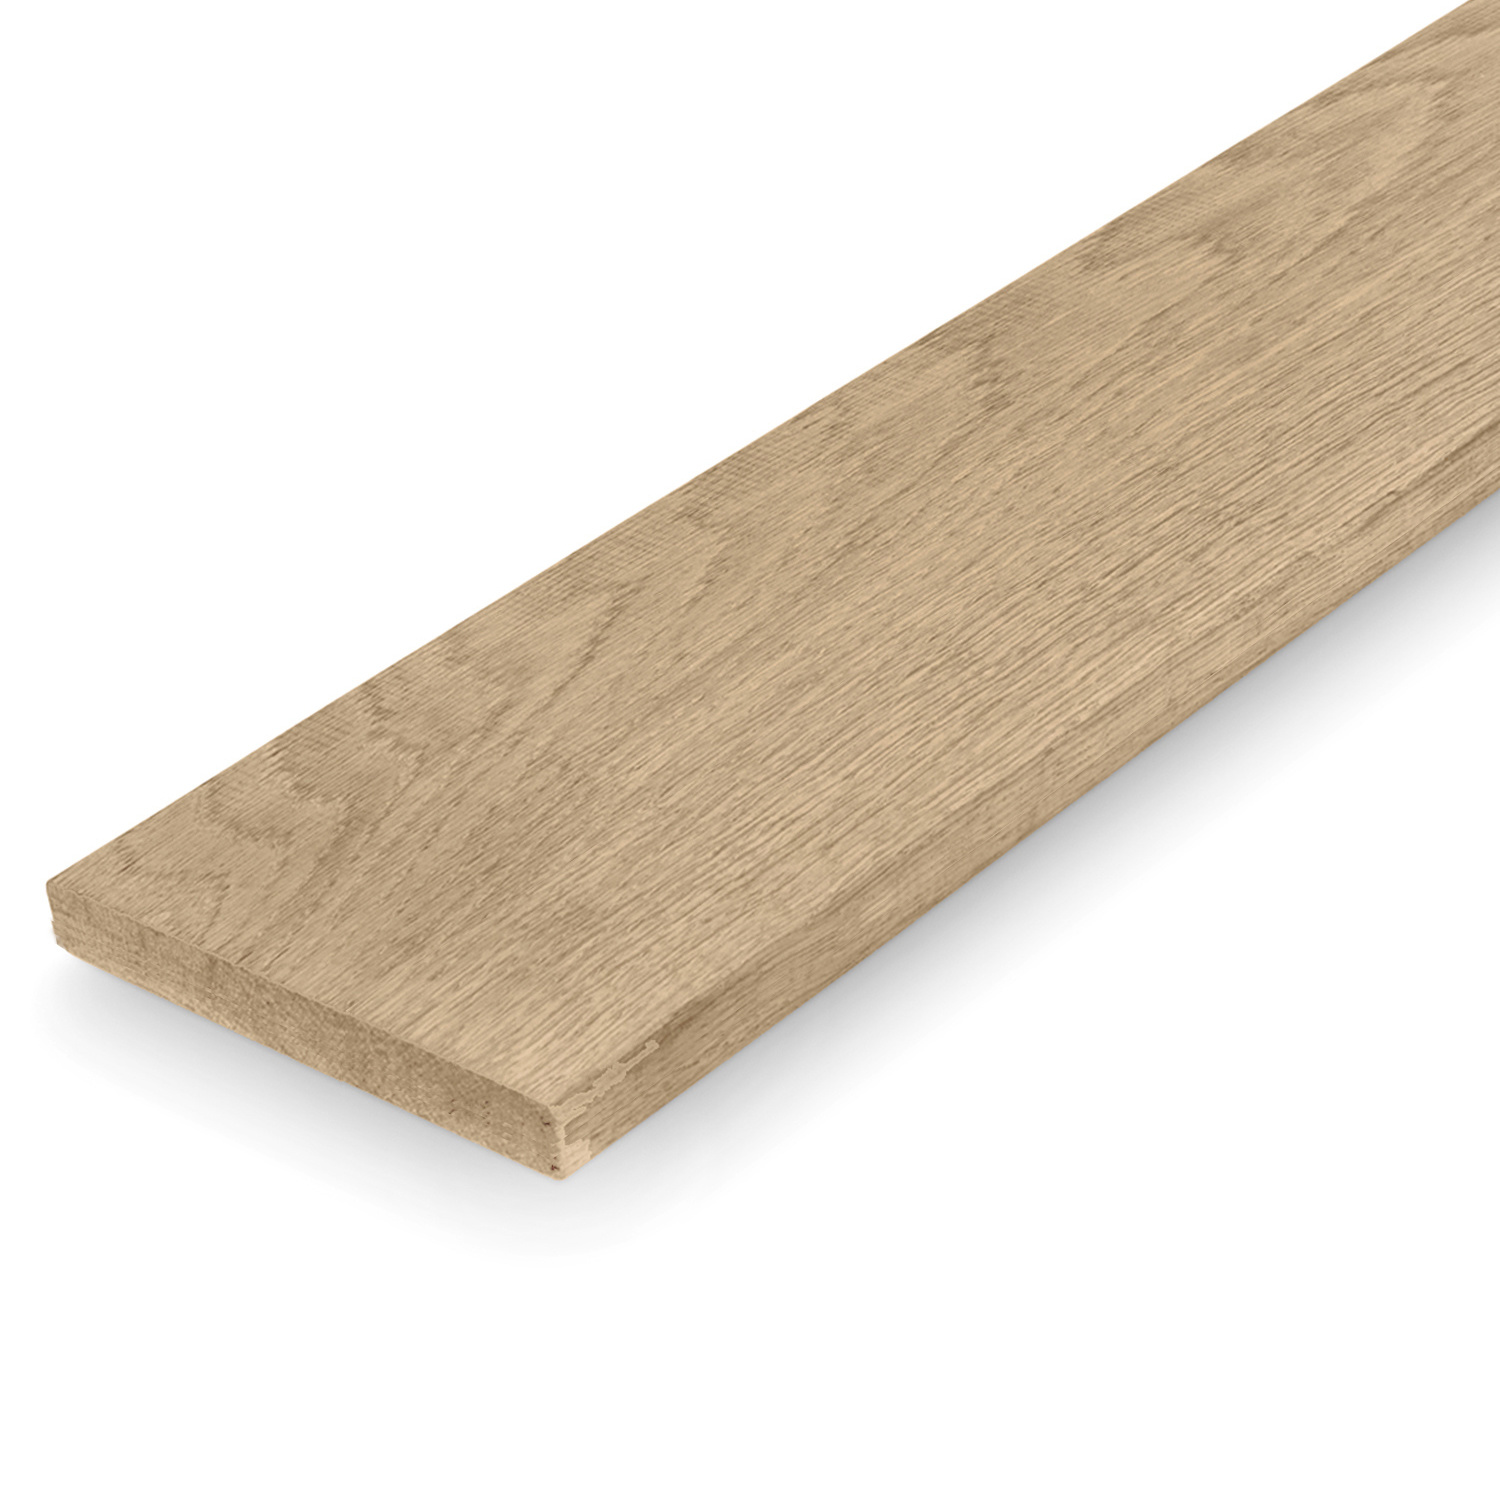  Eiken plank 25x143mm geschaafd Eikenhout